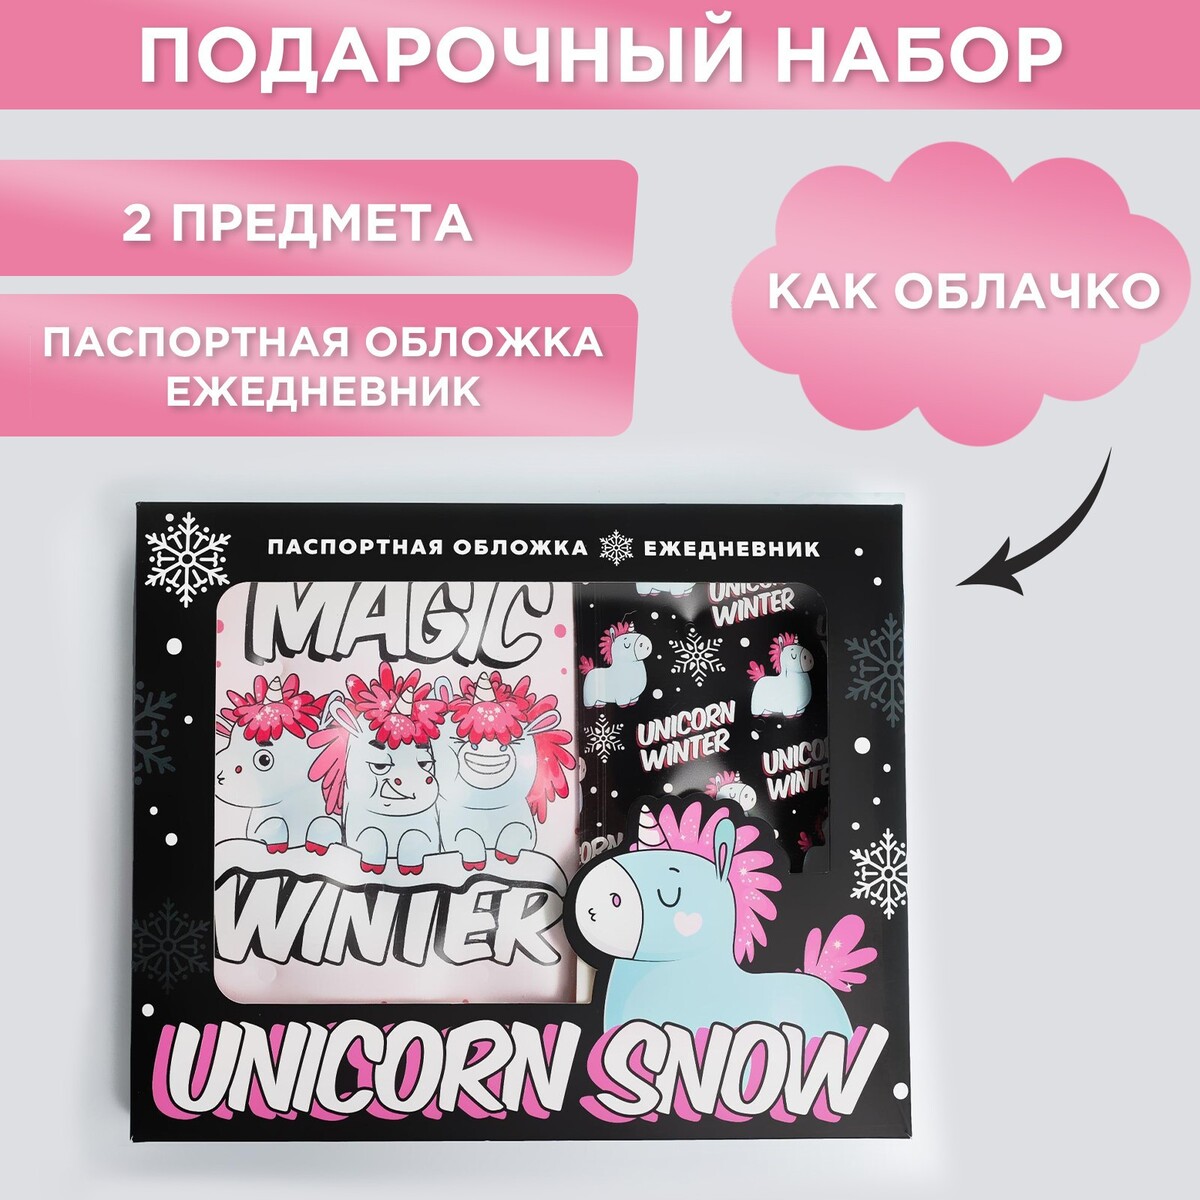 Набор unicorn snow: паспортная обложка-облачко и ежедневник-облачко набор unicorn snow паспортная обложка облачко и ежедневник облачко